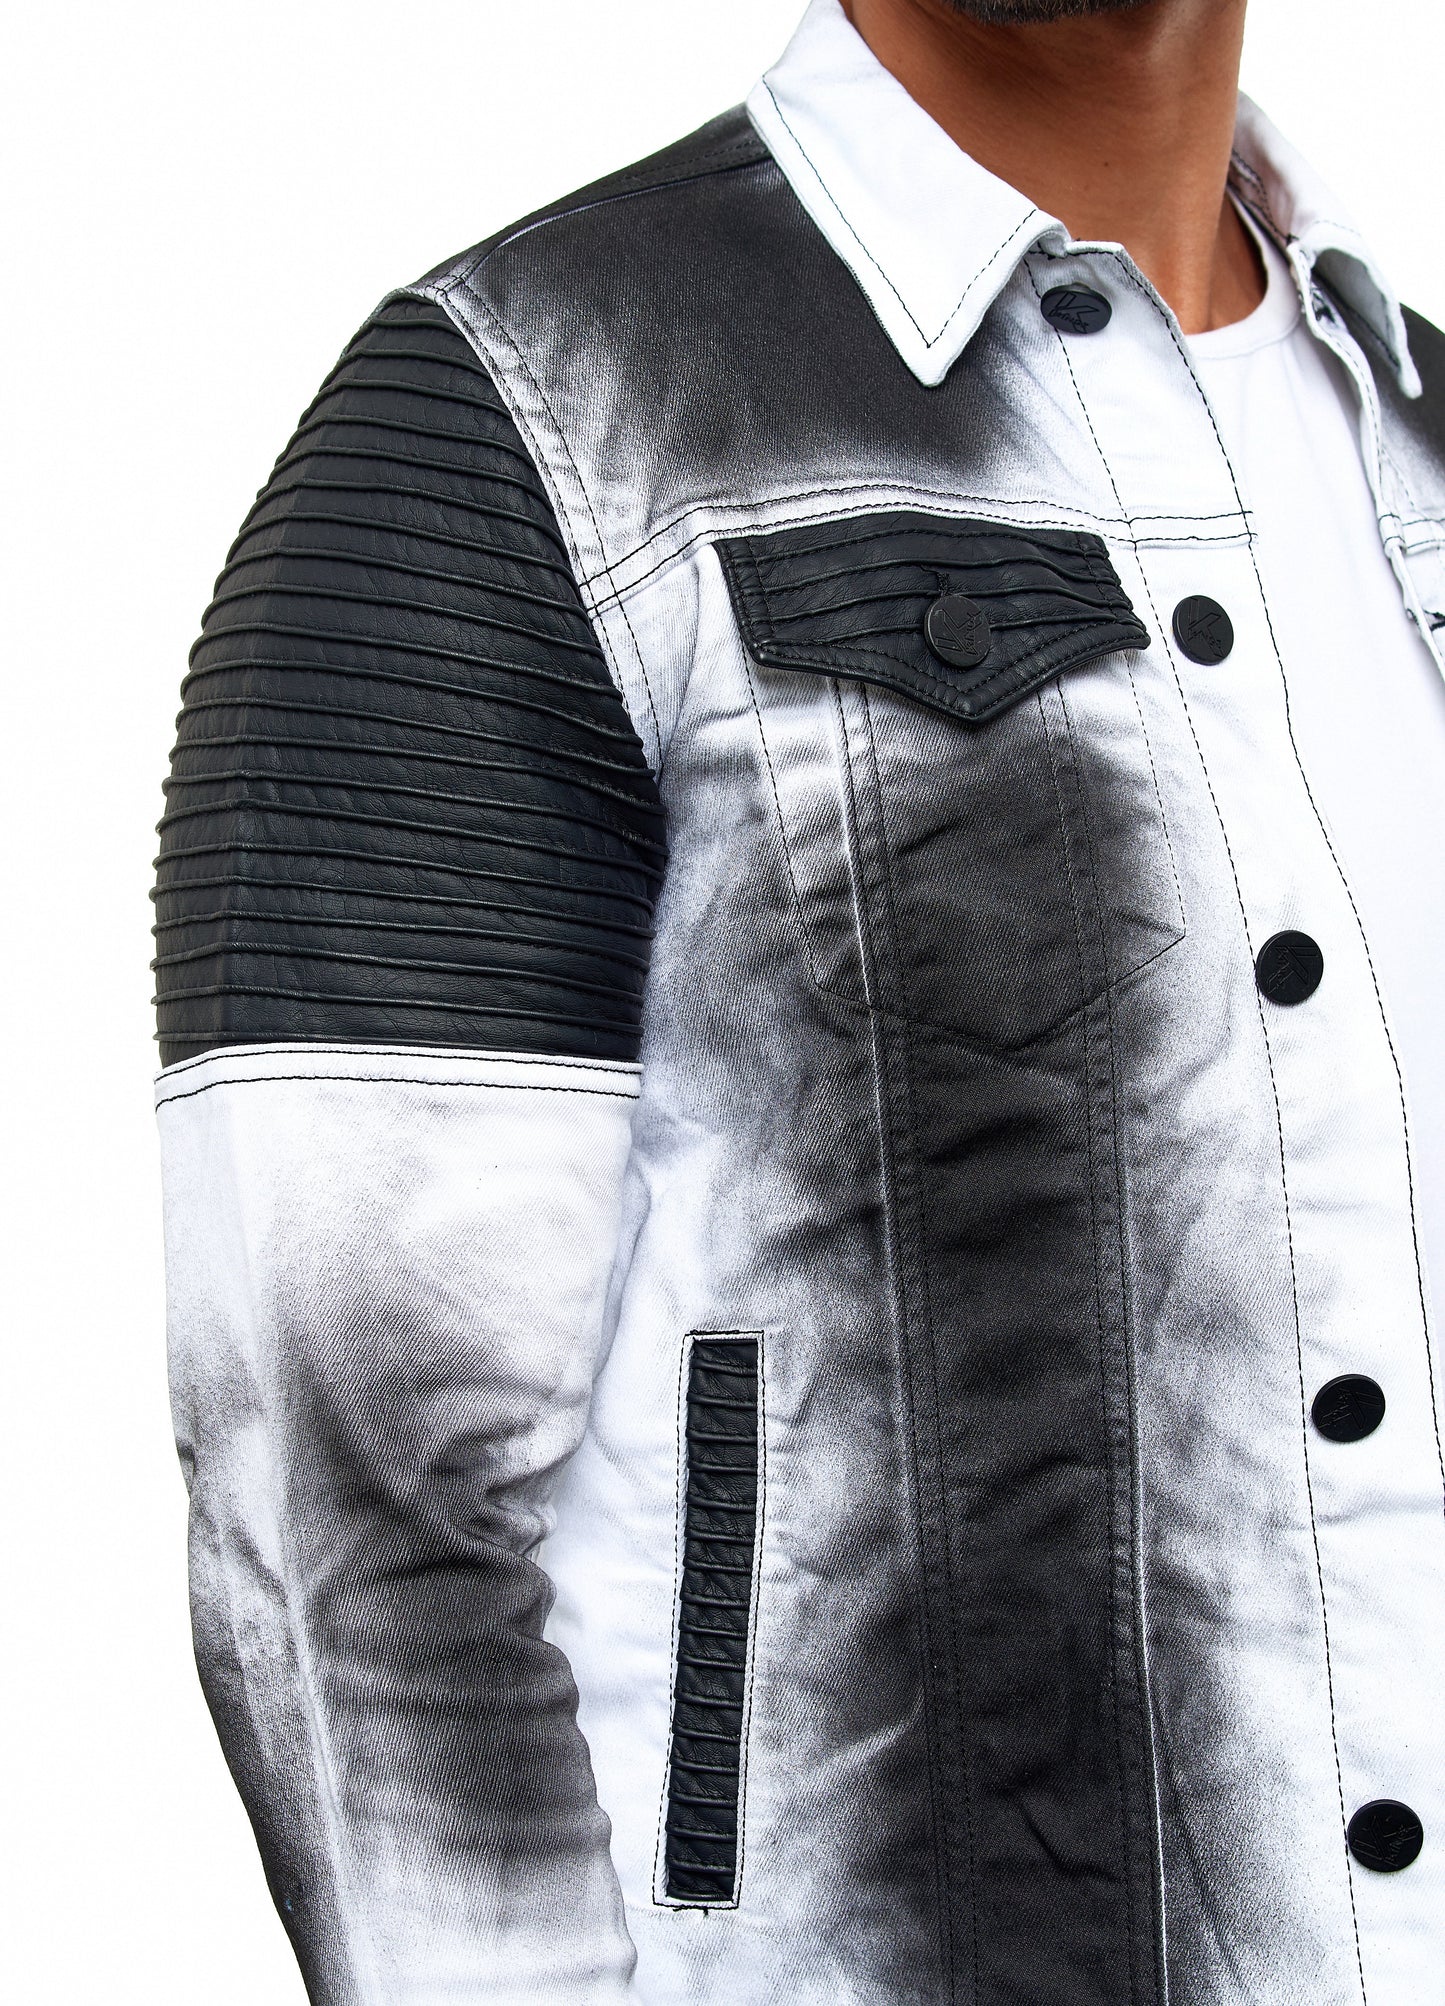 KINGZ men's designer denim jacket, slim fit, tie-dye look, model 1401-2, white/black